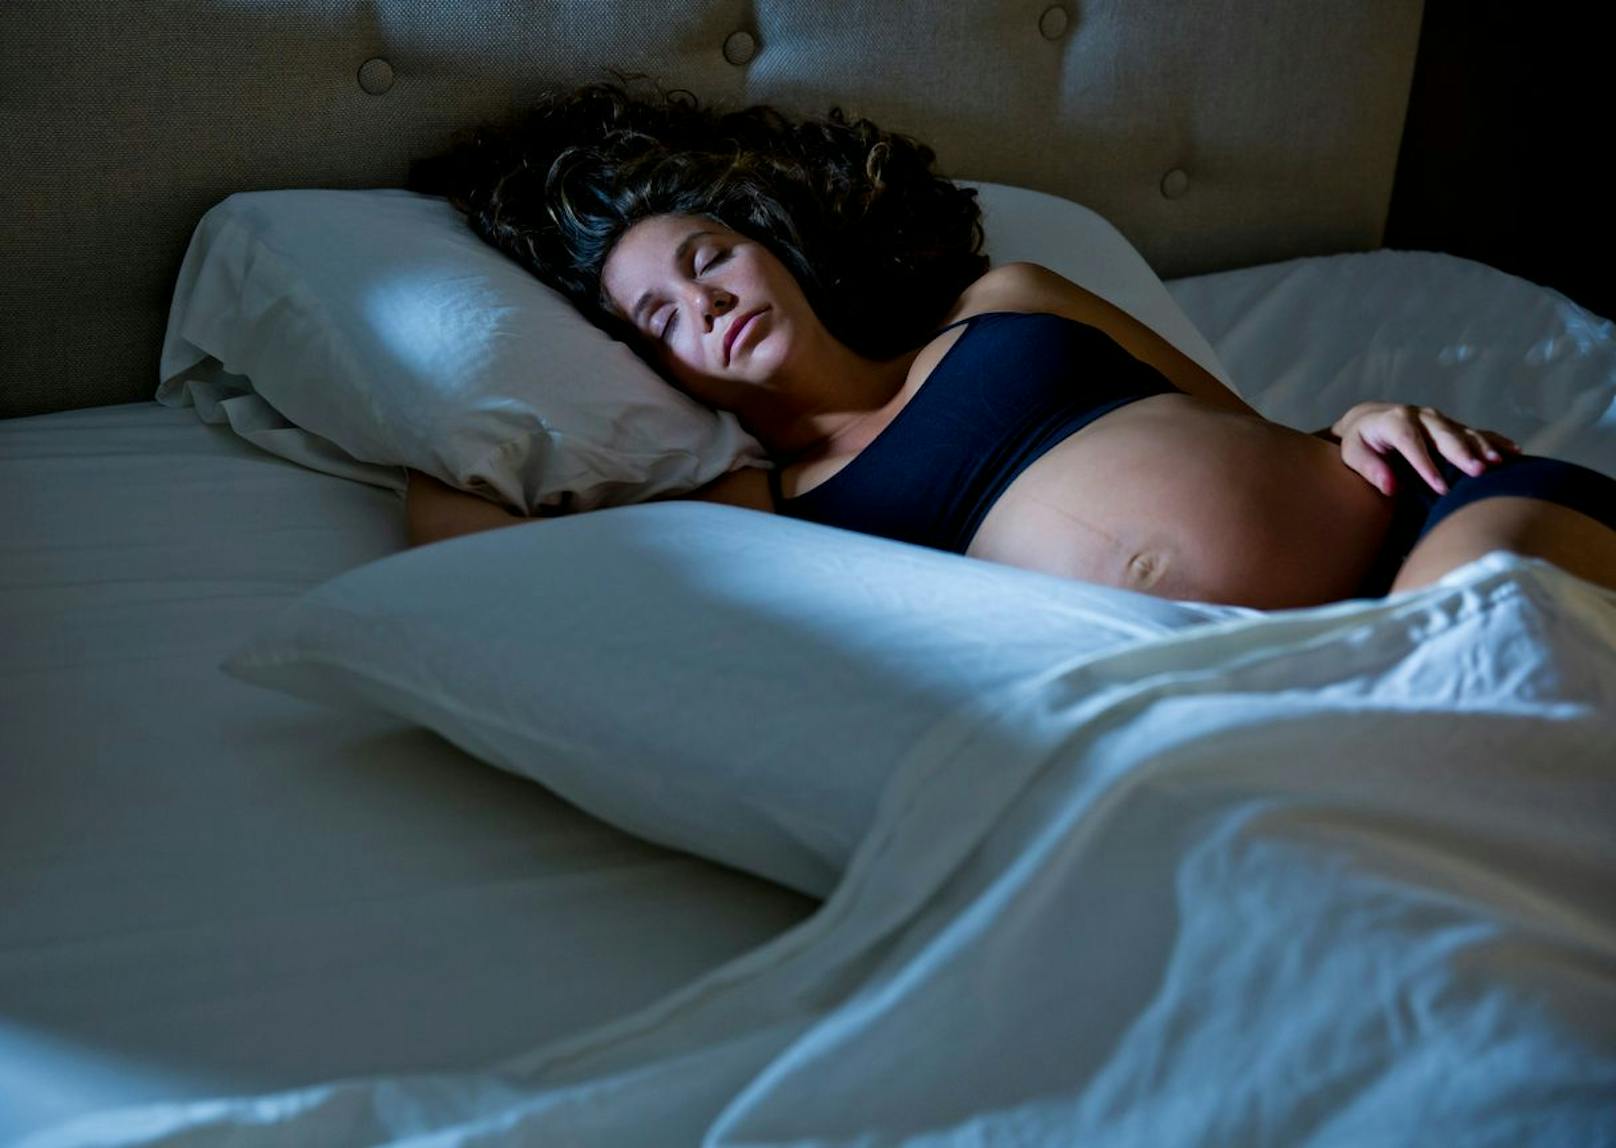 Frauen, die ihre Abende im Hellen verbrachten, hatten ein fünffach höheres Risiko, an Schwangerschaftsdiabetes zu erkranken, als Frauen, die sich am häufigsten bei gedämpftem Licht aufhielten – so das Ergebnis der Studie.